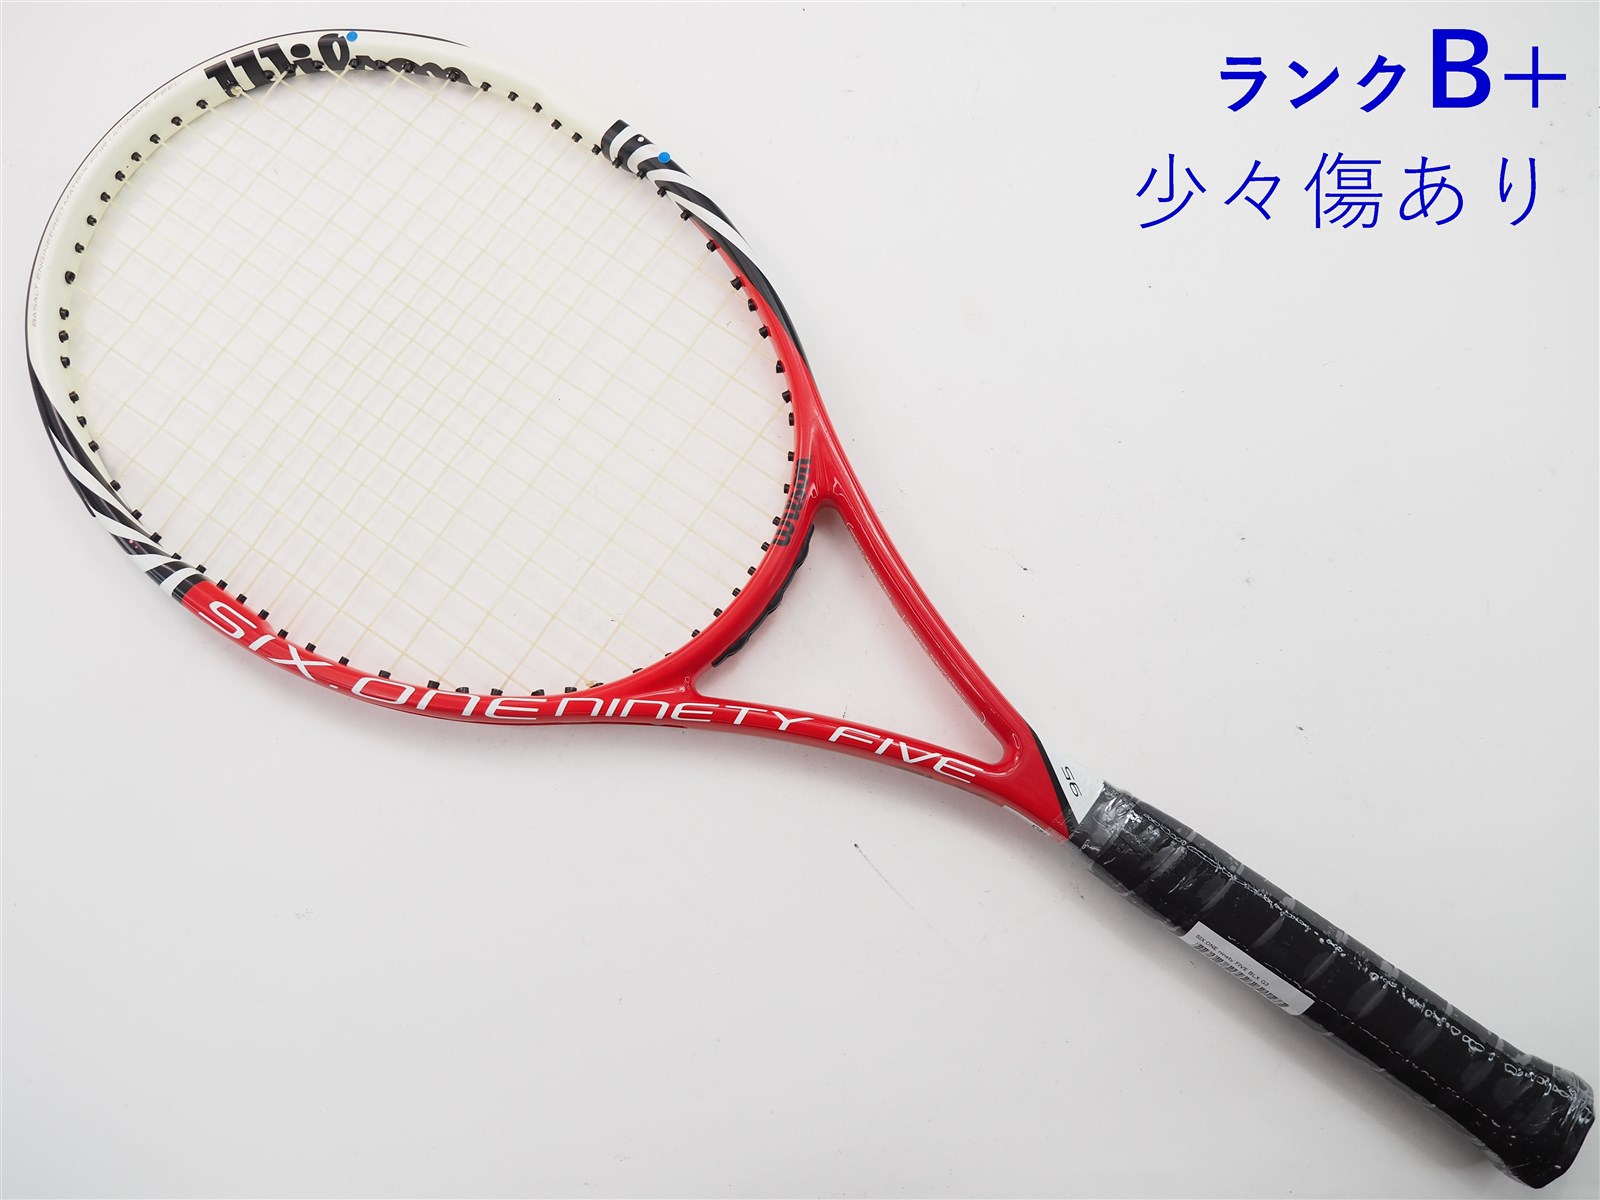 【中古】ウィルソン シックスワン 95 JP 2012年モデルWILSON SIX.ONE 95 JP 2012(G3)【中古  テニスラケット】【送料無料】